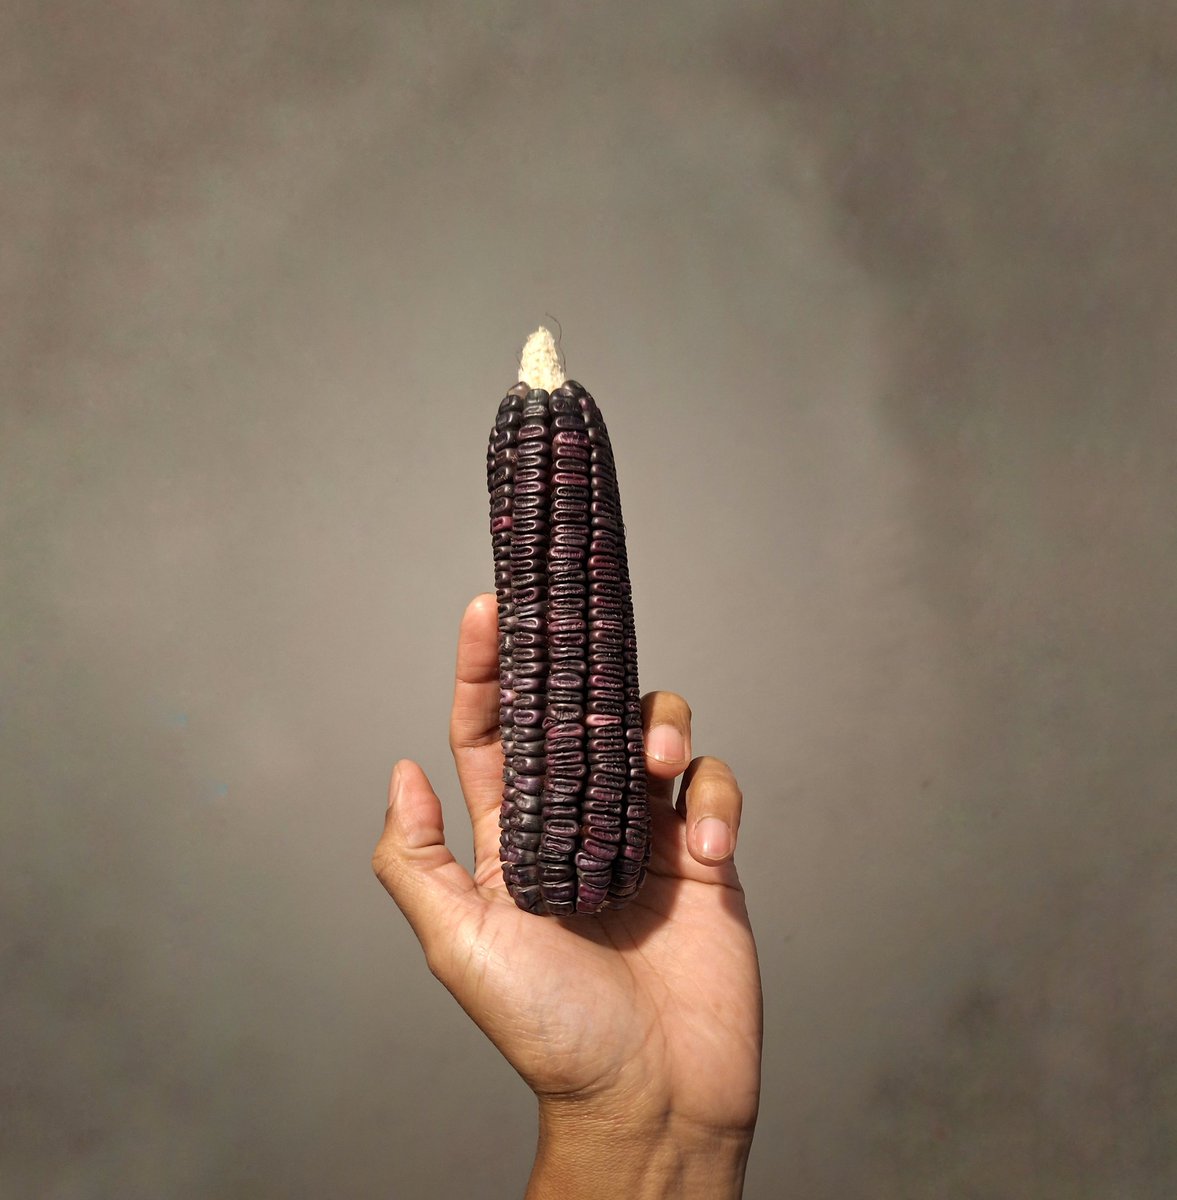 A darle, que es maíz criollo...

Feria Estatal de la Agrobiodiversidad.

Ejido Unión Zapata, San Pablo Villa de Mitla, #Oaxaca.

#SinMaízNoHayPaís🌽